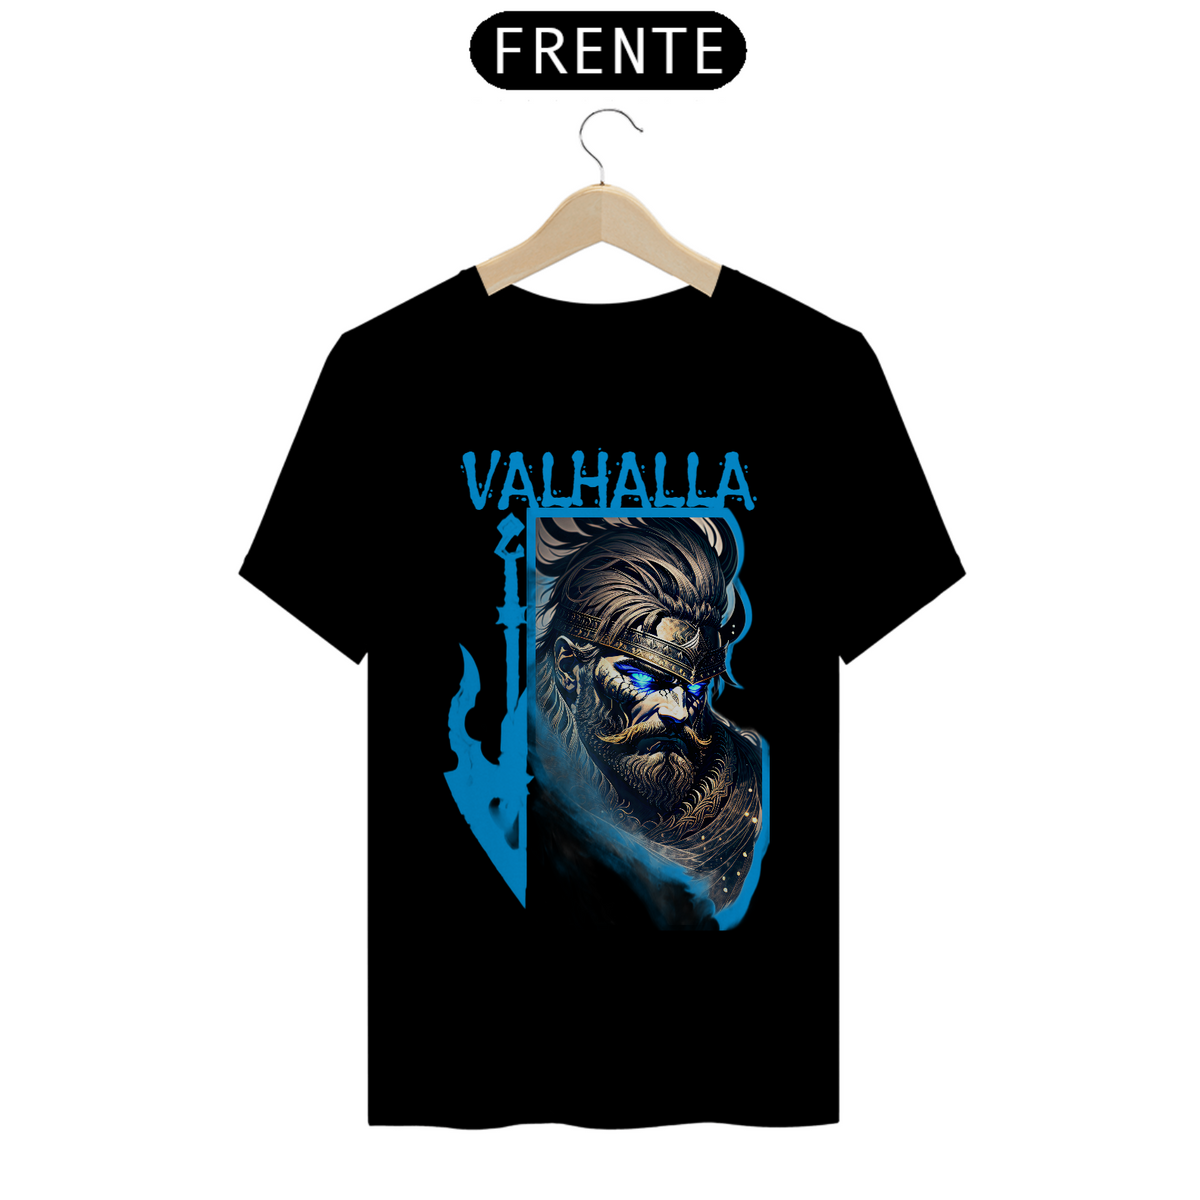 Nome do produto: Camisa Valhalla Quality